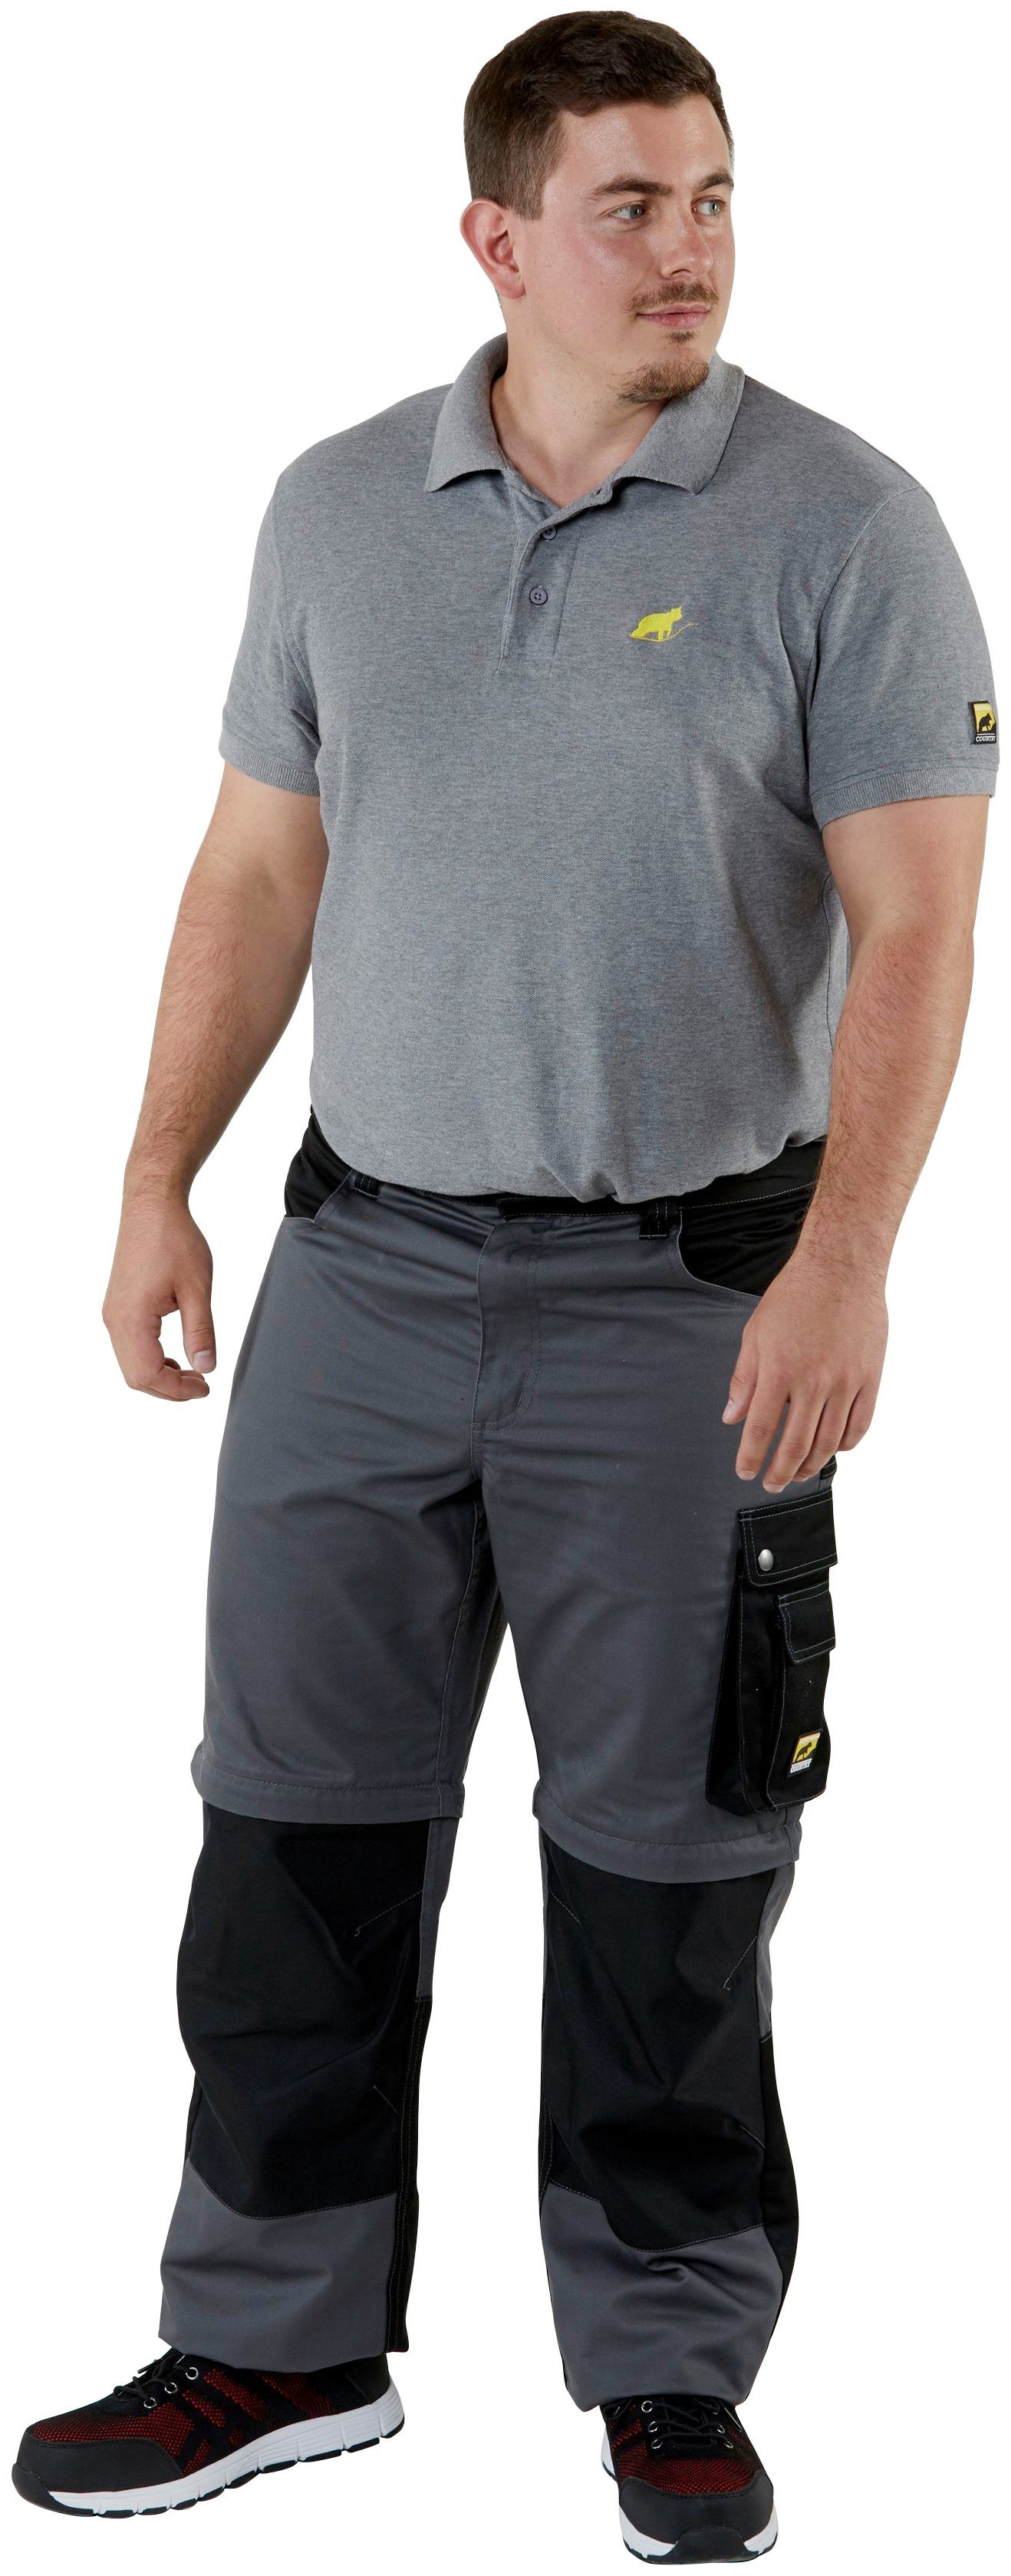 Funktion: mit Zipp-off 8 Kniebereich, Shorts möglich, Beinverlängerung einem Taschen) und lange Arbeitshose (verstärkter Worker in Country Northern Arbeitshose